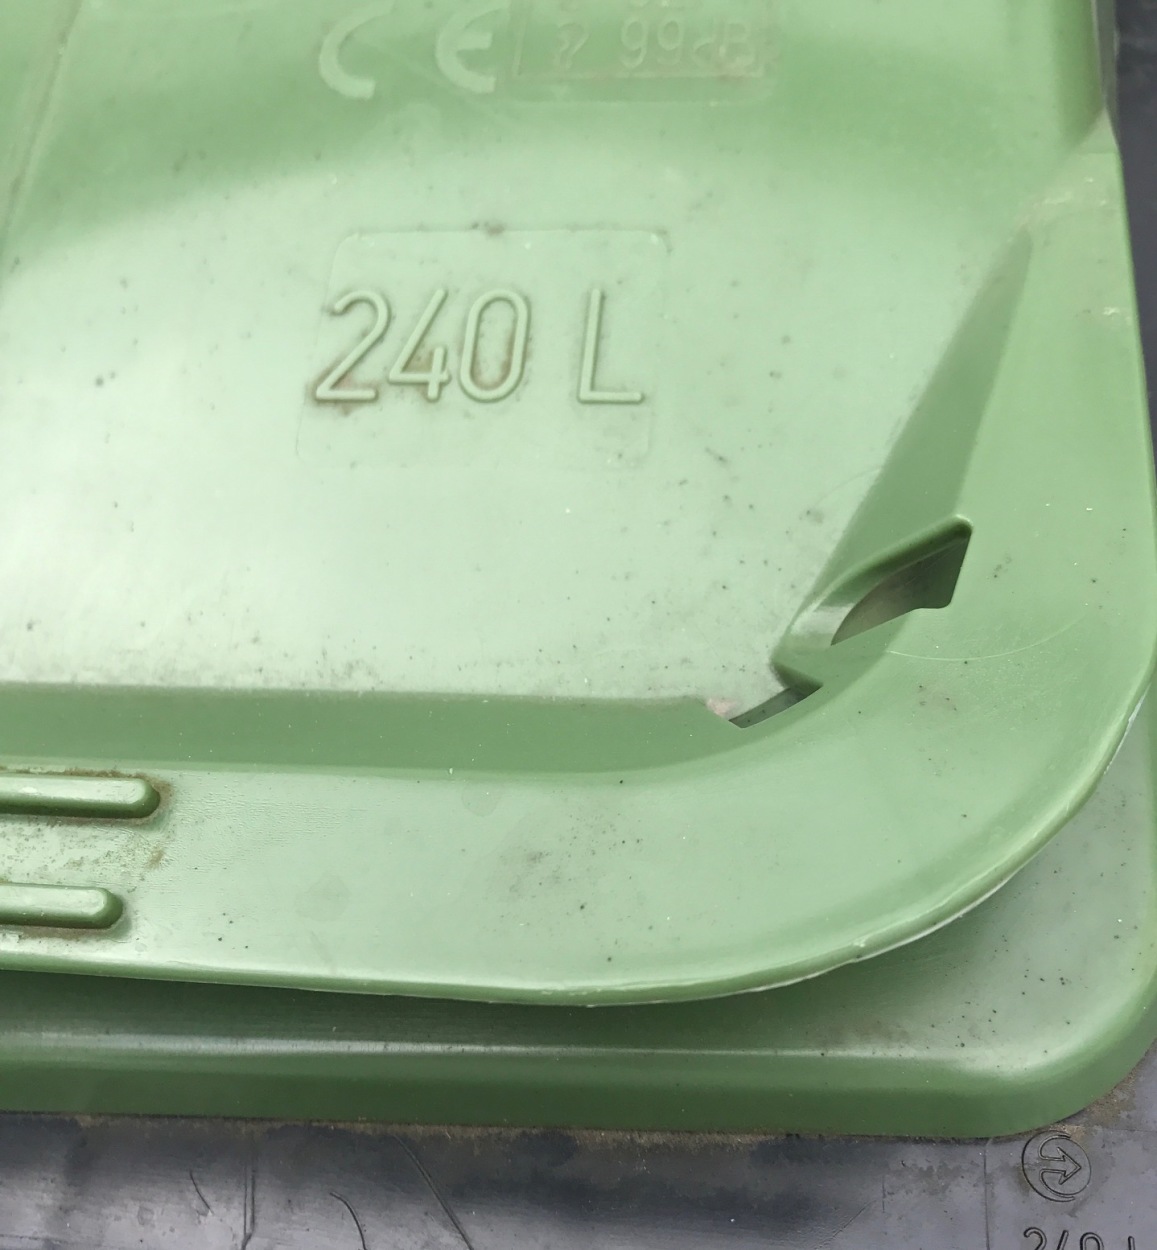 Avfallsbeholderne er merket med antall liter.